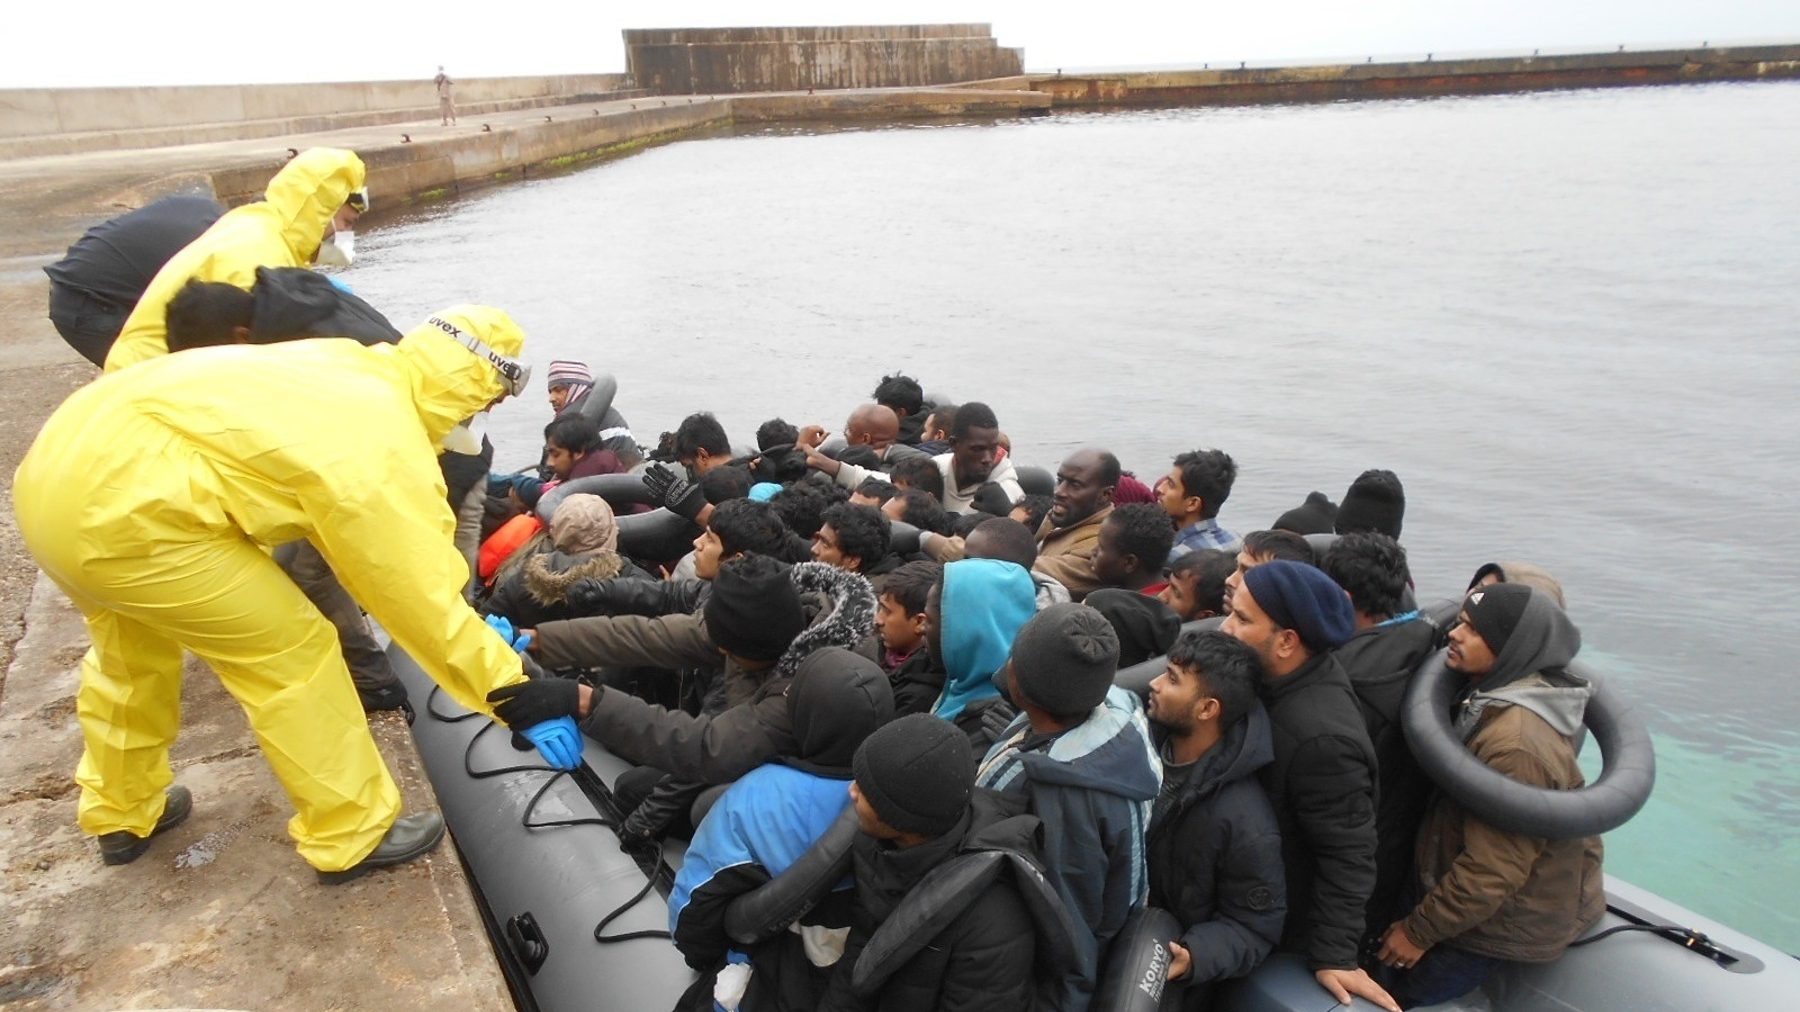 Patera con inmigrantes ilegales llega a la isla de Alborán, en el mar Mediterráneo.